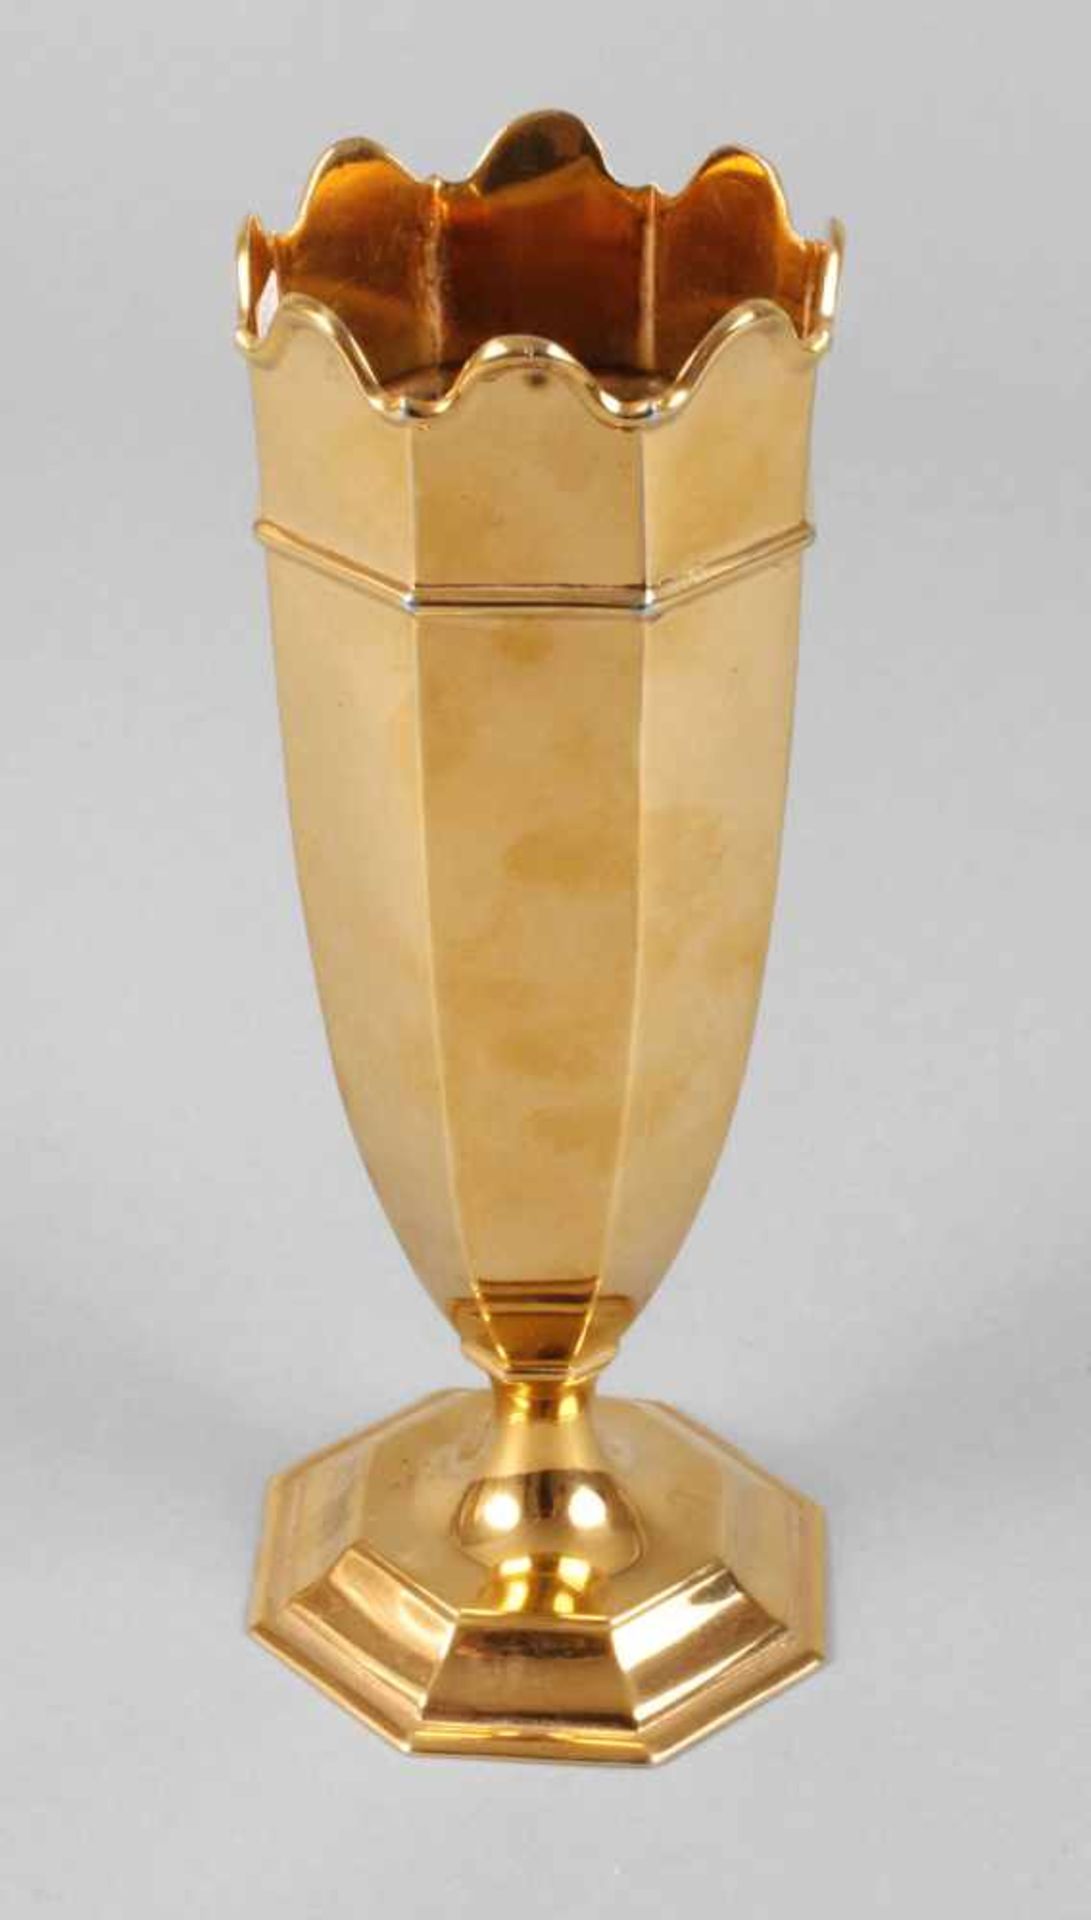 England vergoldete Silbervase Sheffield, um 1923-1924, Herstellermarke Roberts & Belk Ltd., Punzen R